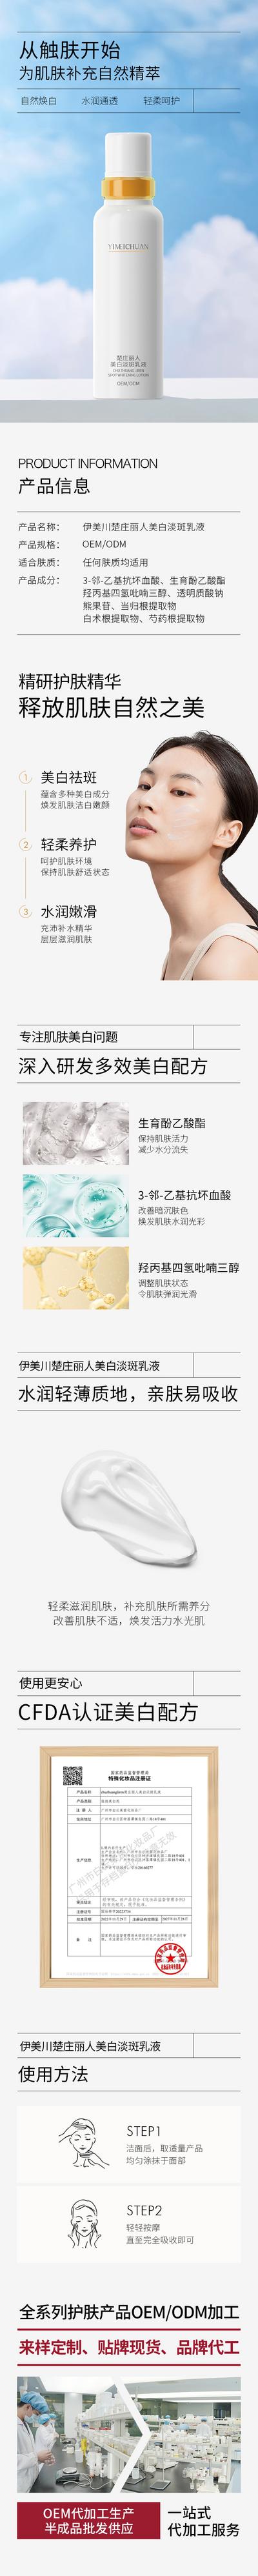 【南门网】广告 海报 电商 美白 化妆品 保养品 详情页